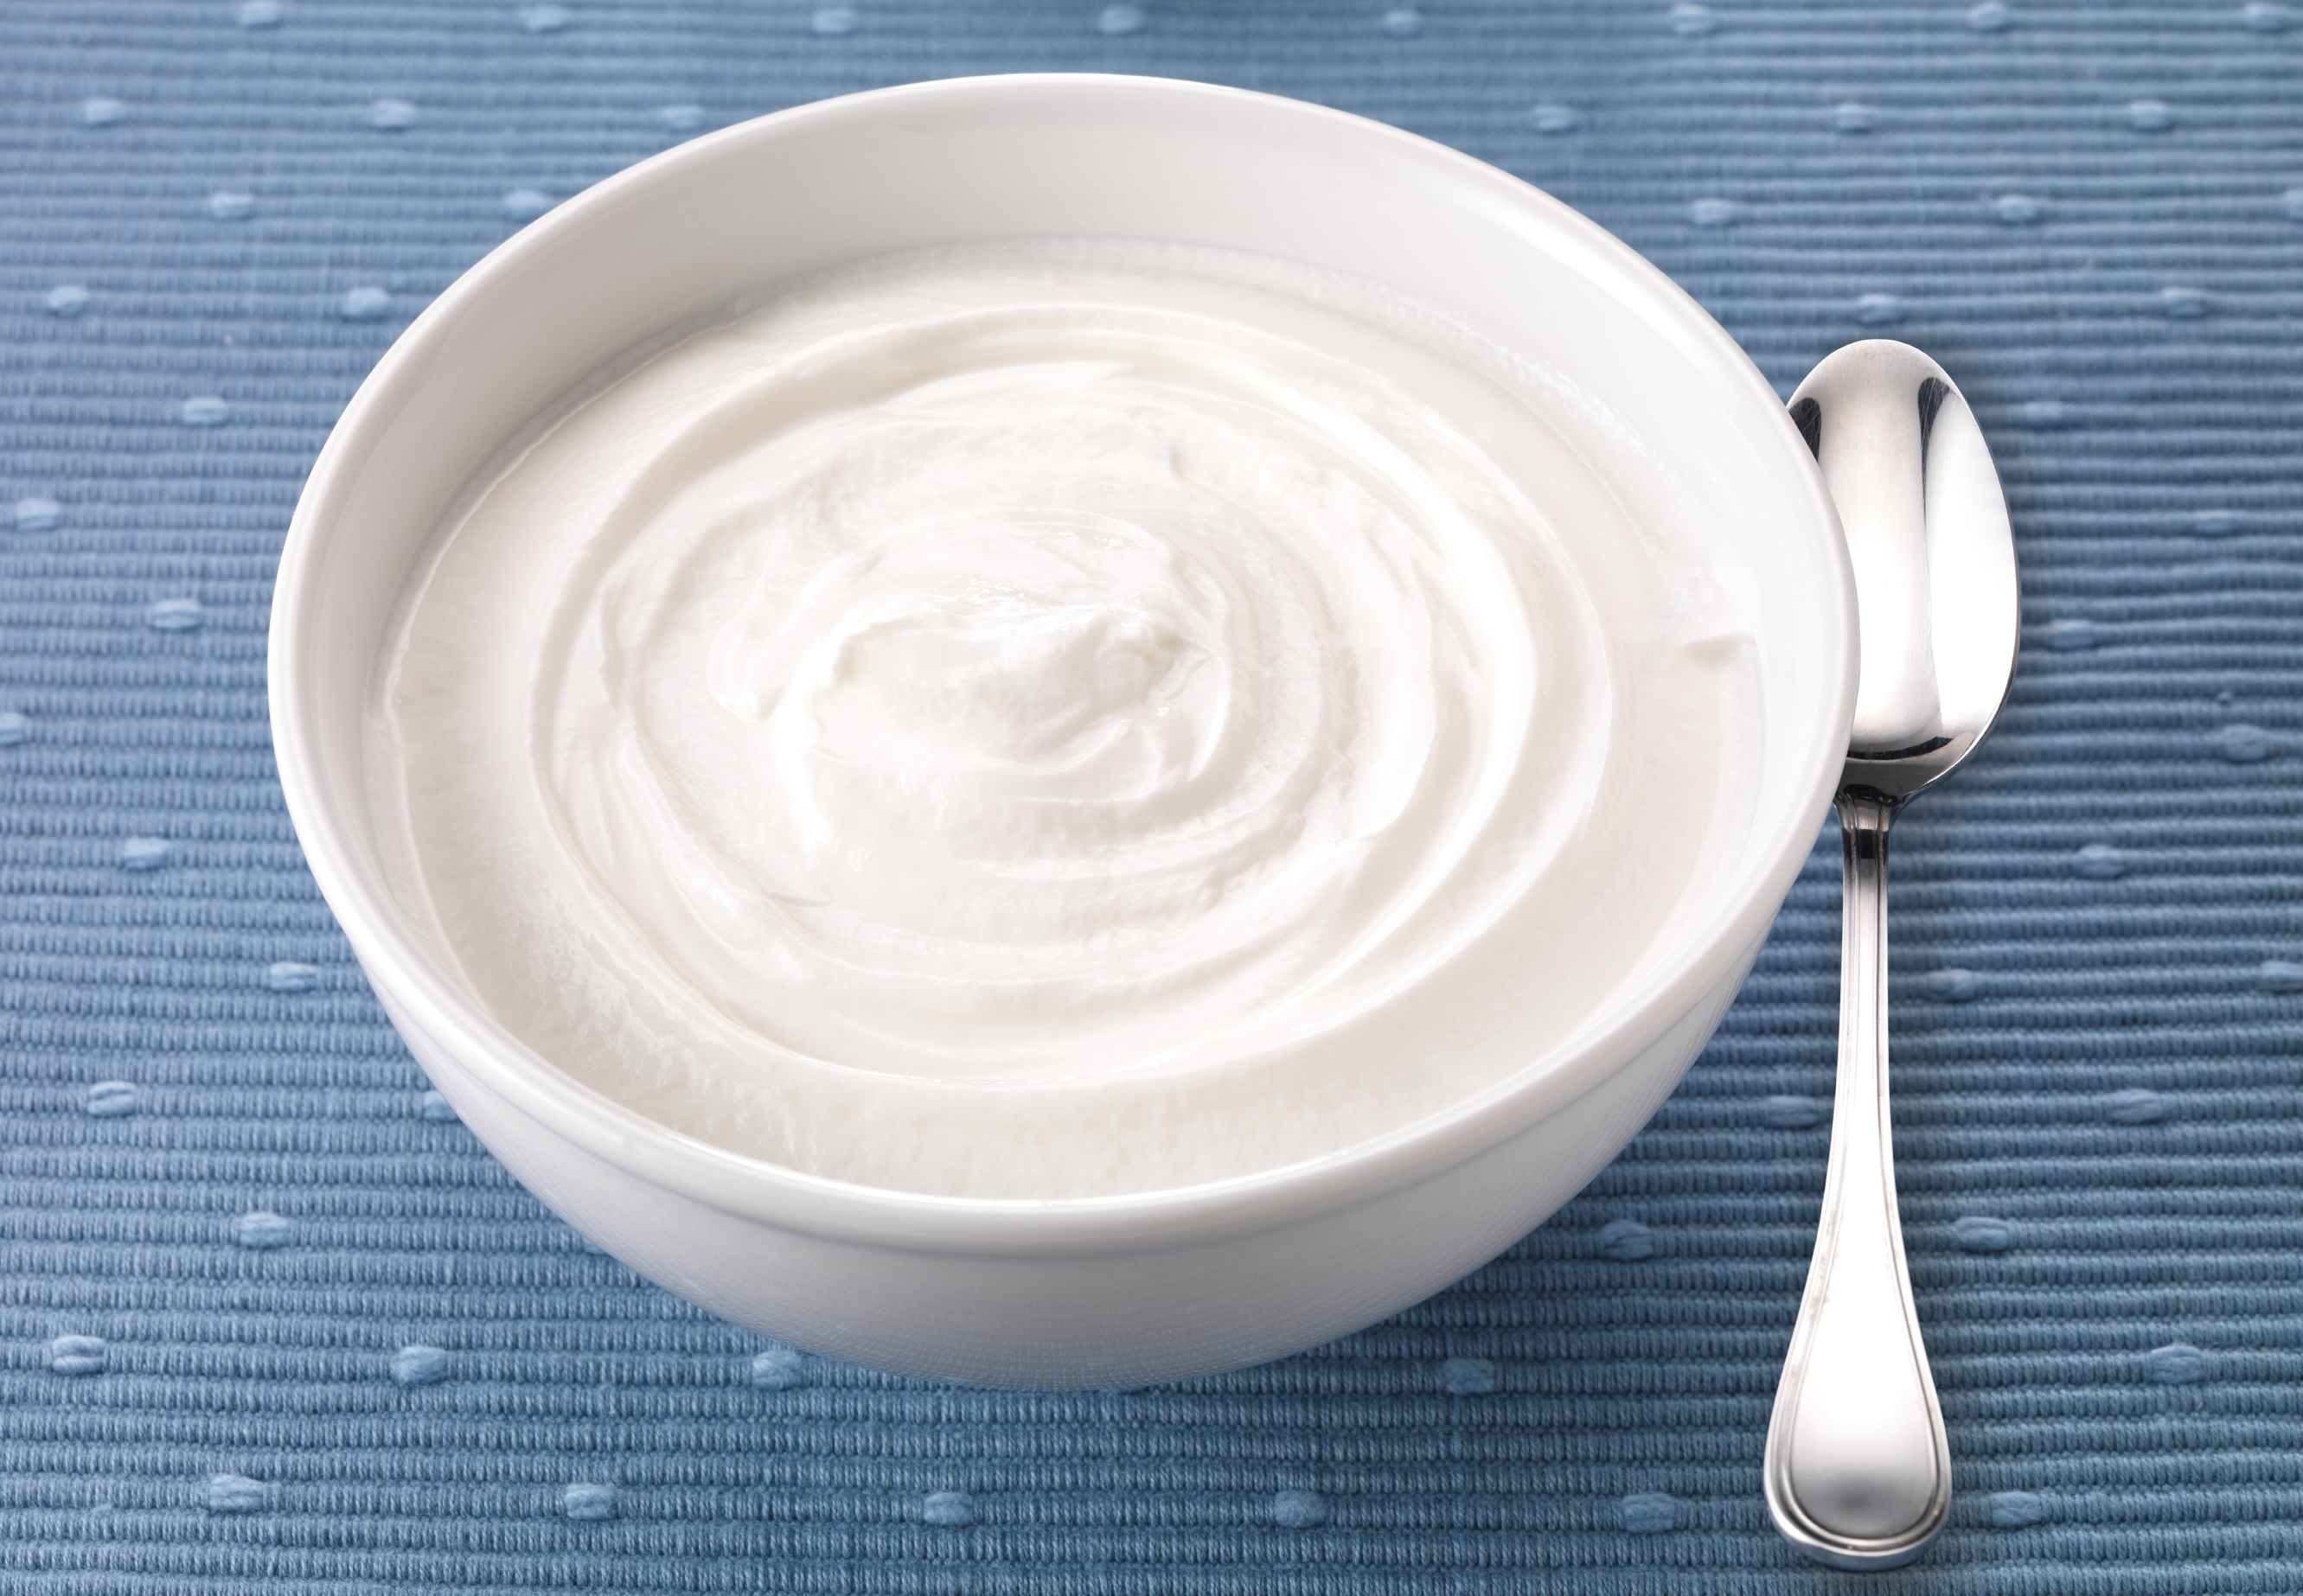 Greek yogurt. Йогурт. Йогурт в тарелке. Греческий йогурт. Сметана в блюдце.